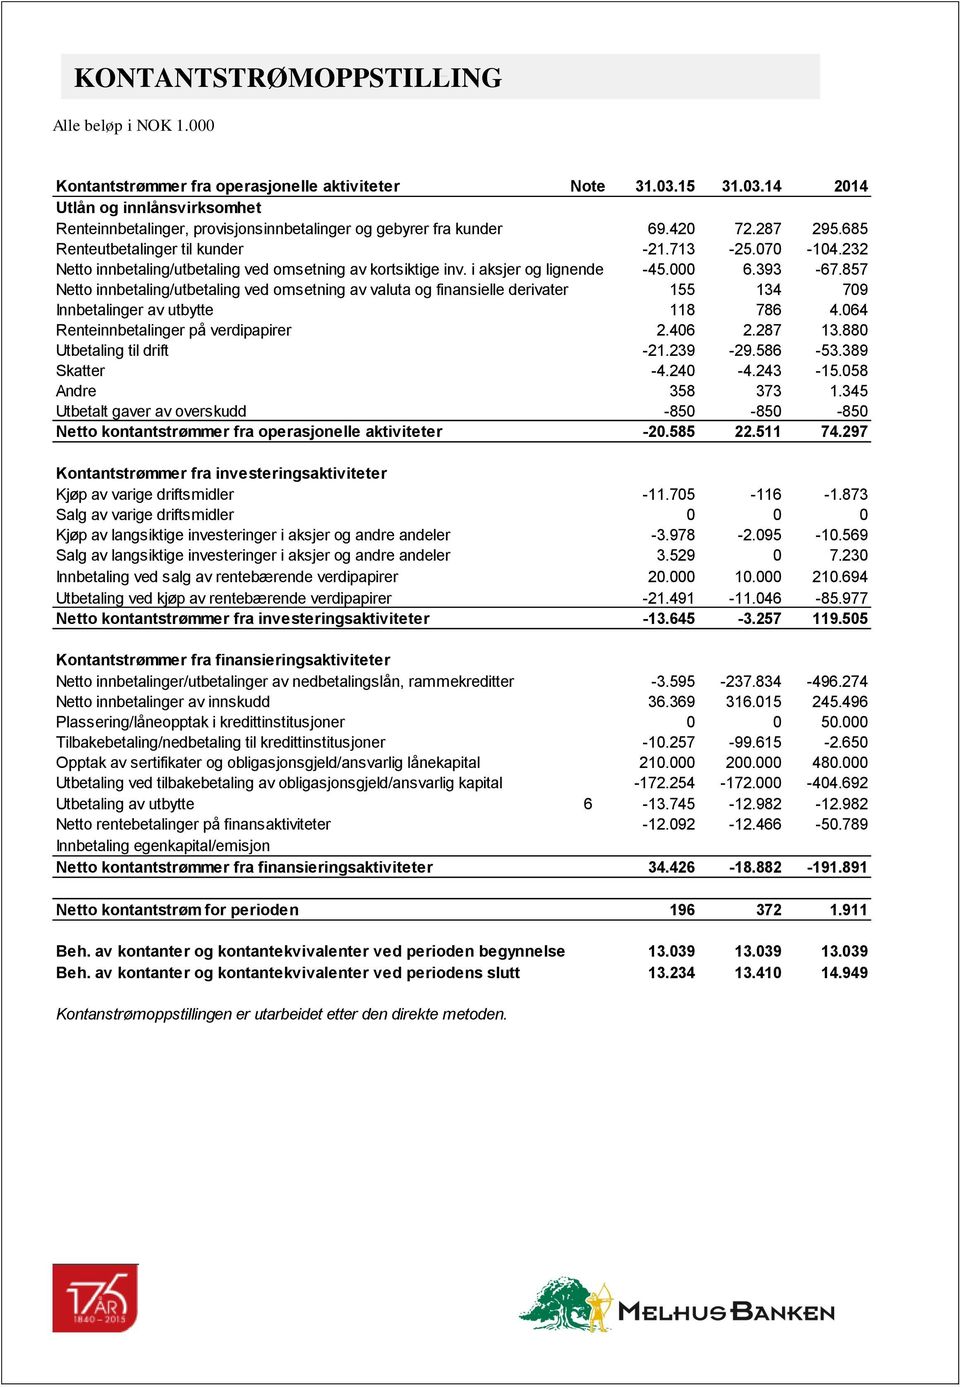 232 Netto innbetaling/utbetaling ved omsetning av kortsiktige inv. i aksjer og lignende -45.000 6.393-67.